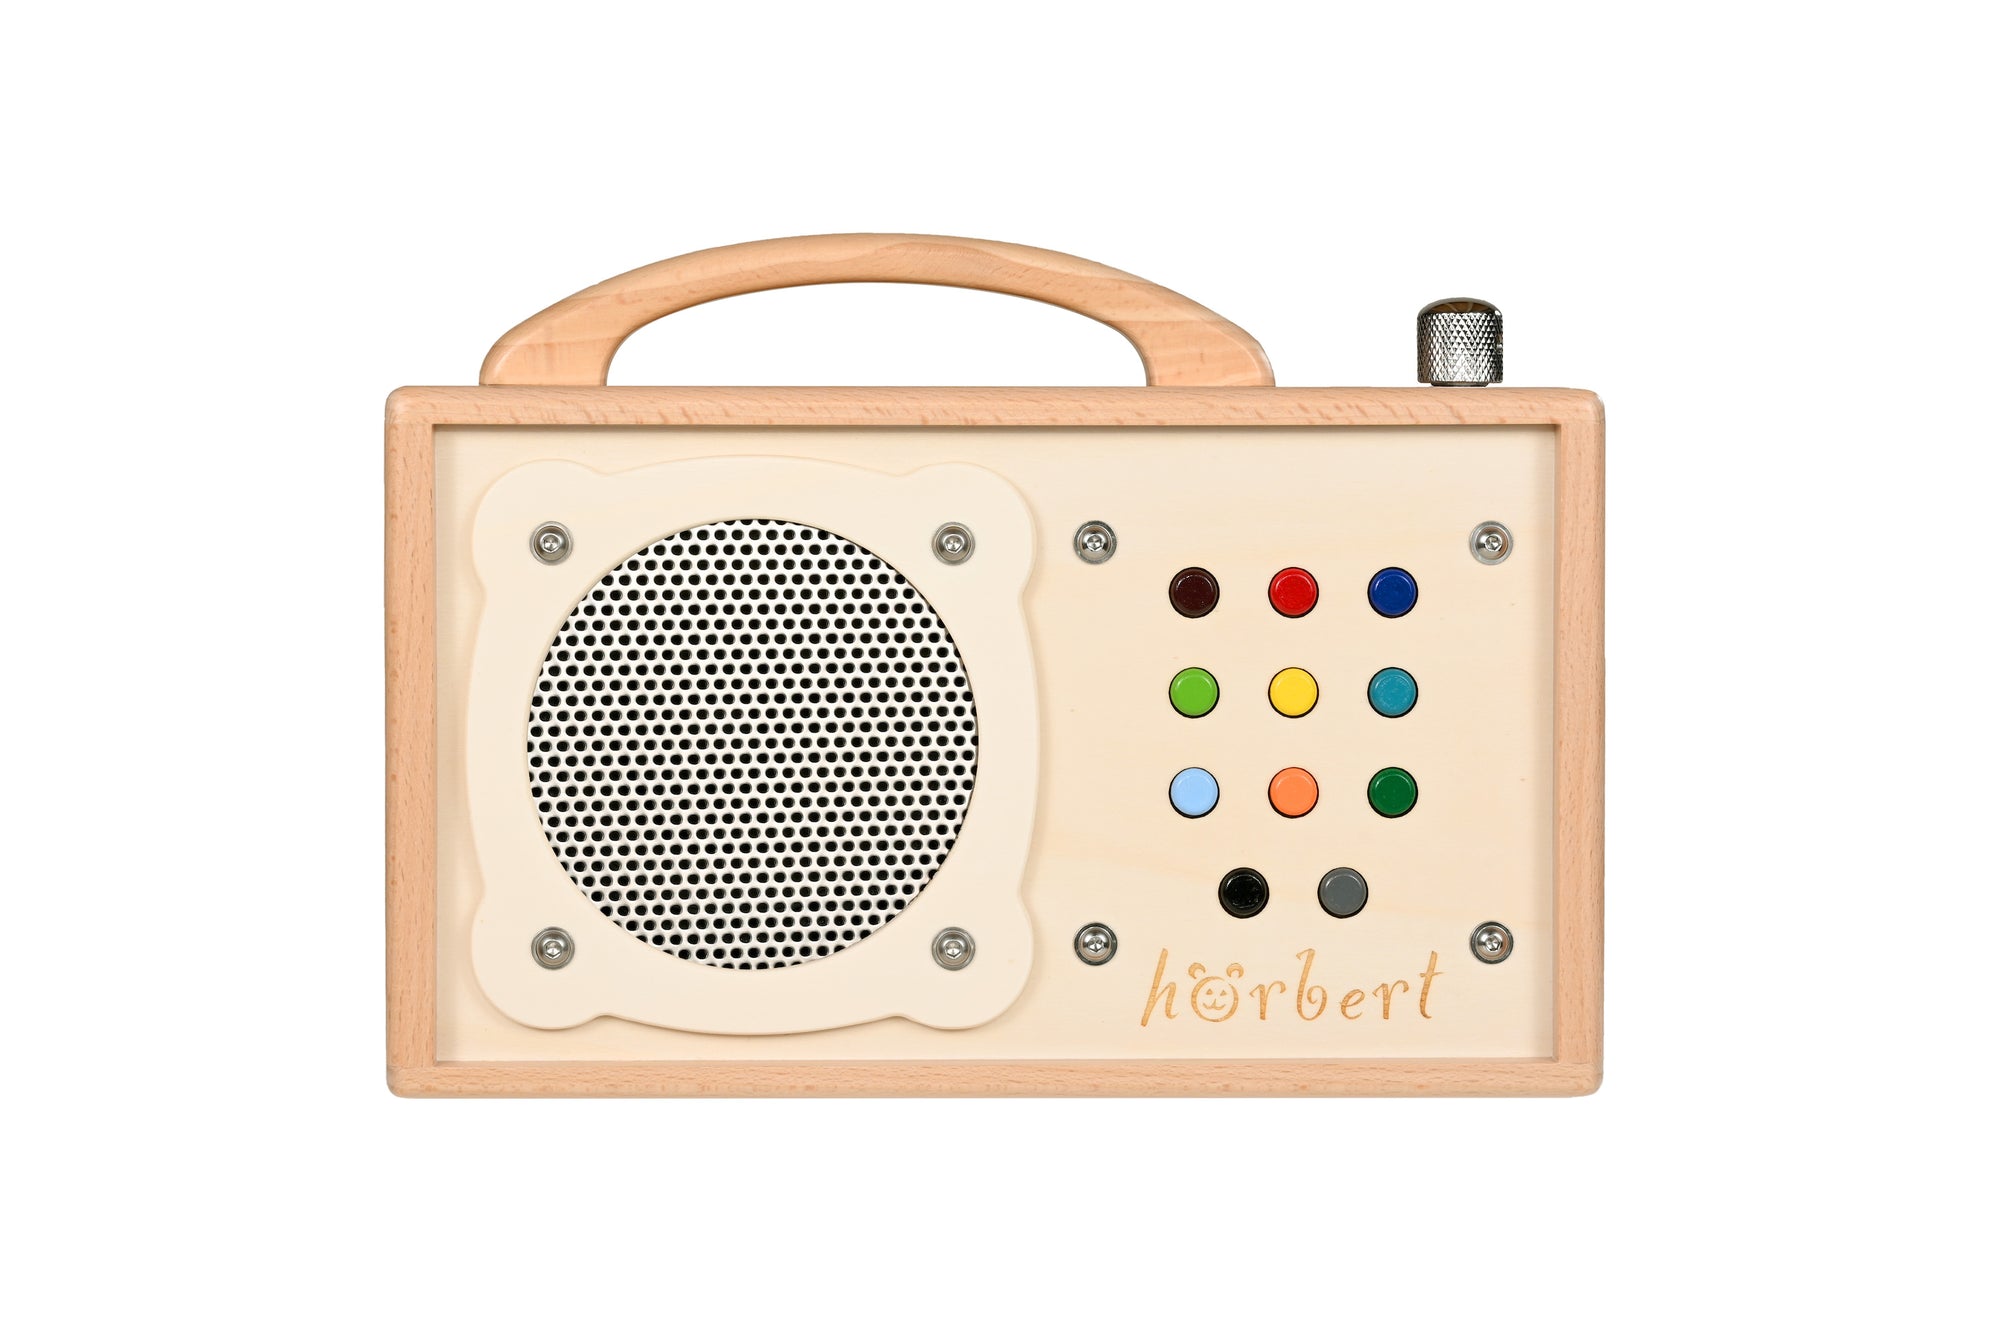 Hörbert (Musikbox)